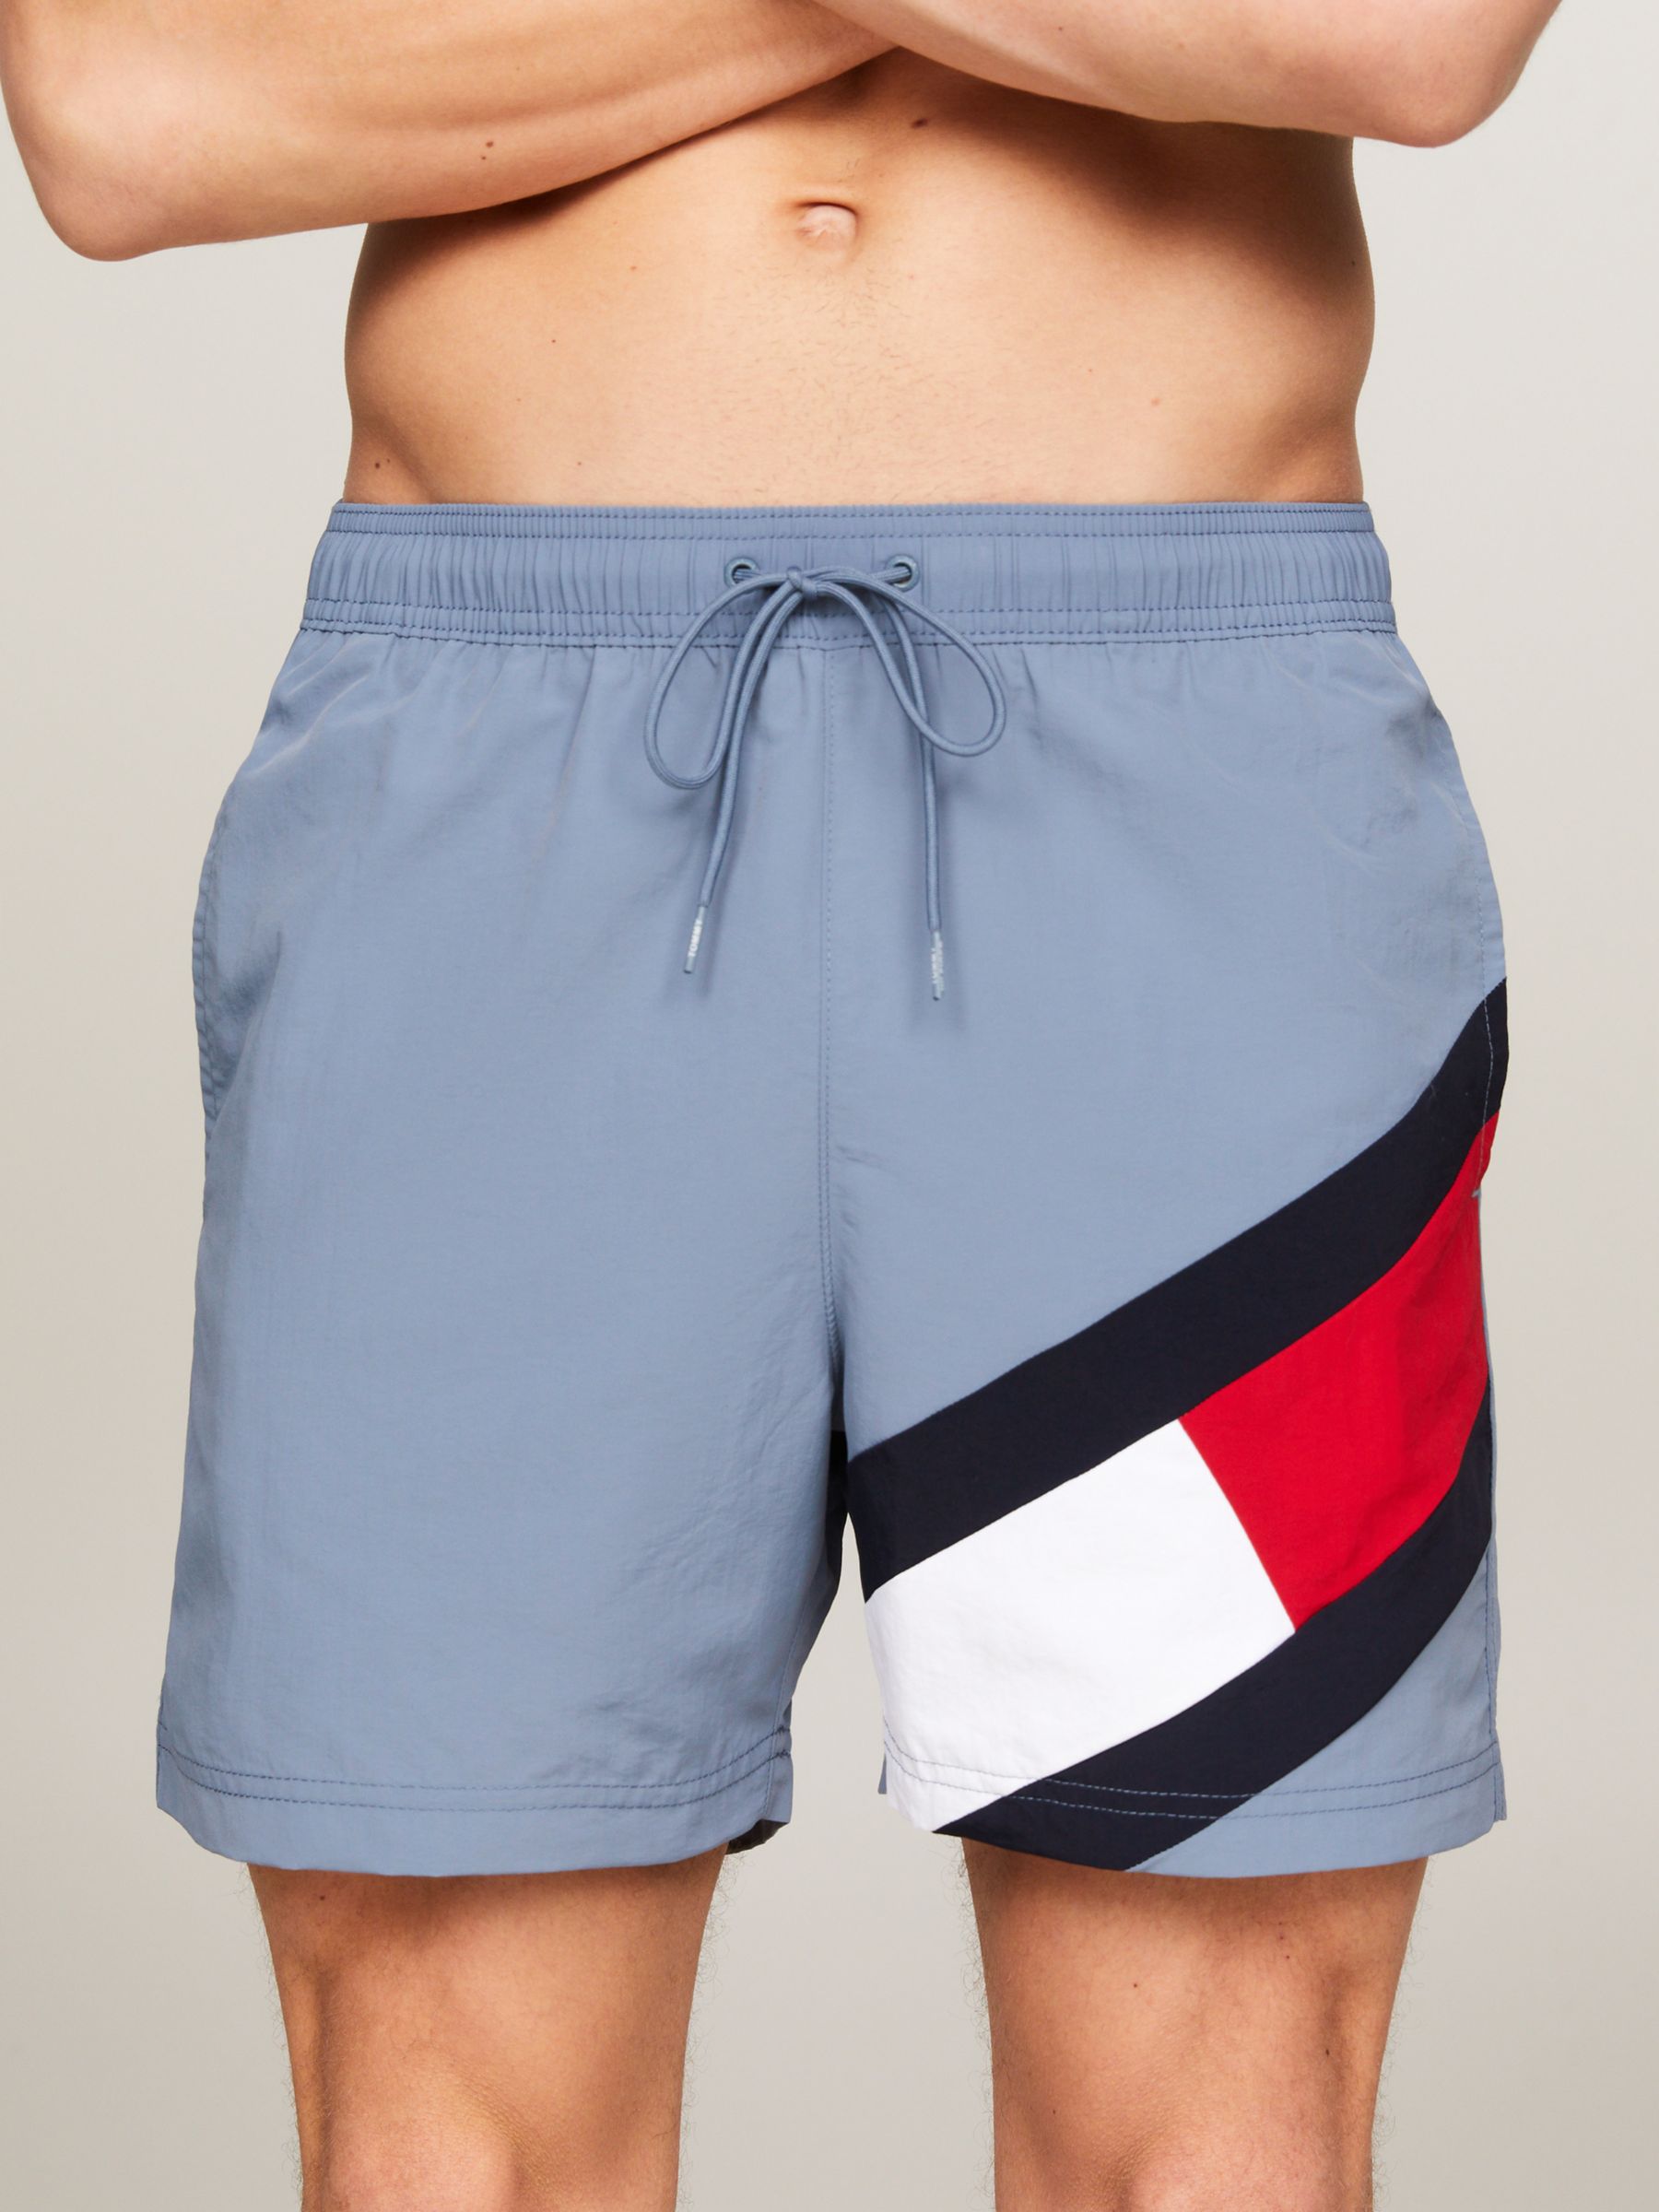 Tommy Hilfiger Iconic Flag Swim Shorts, Blue Coal, L